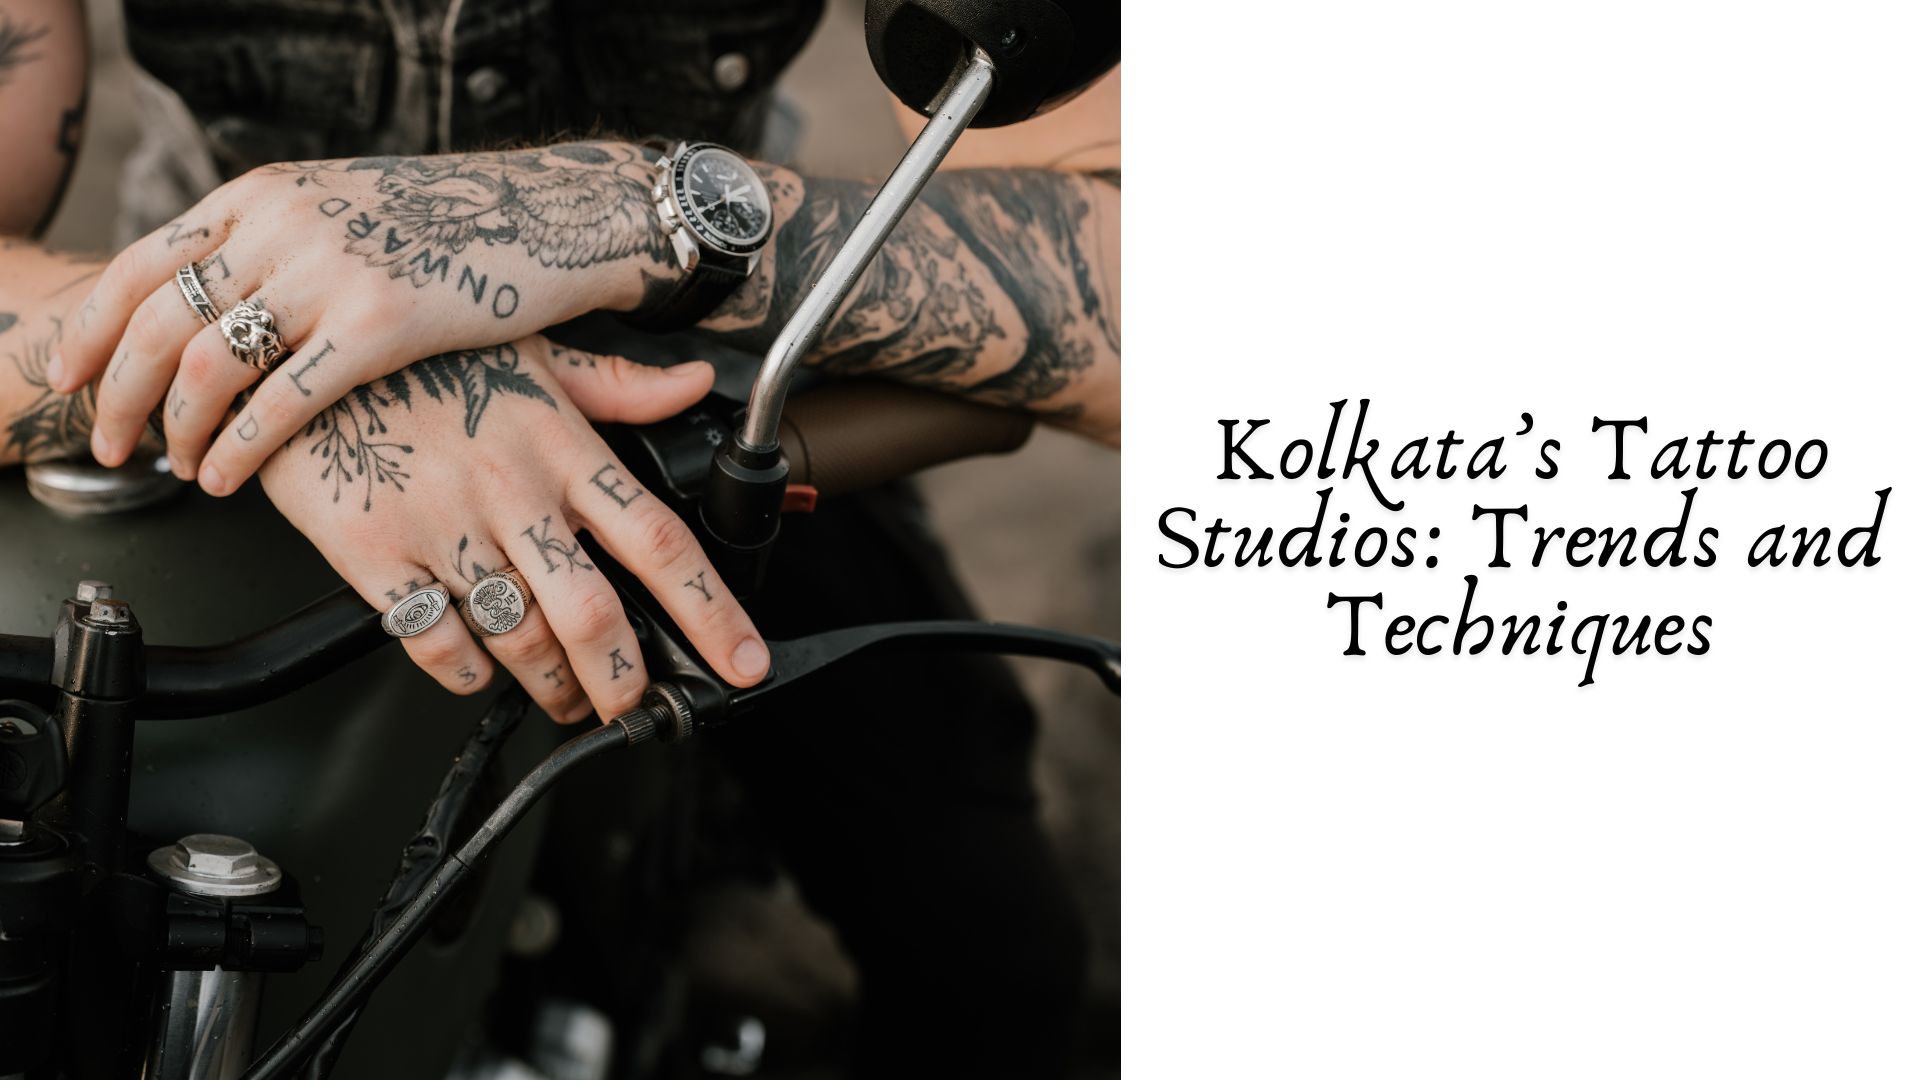 Getting a Tattoo in Kolkata: Studio Recommendations